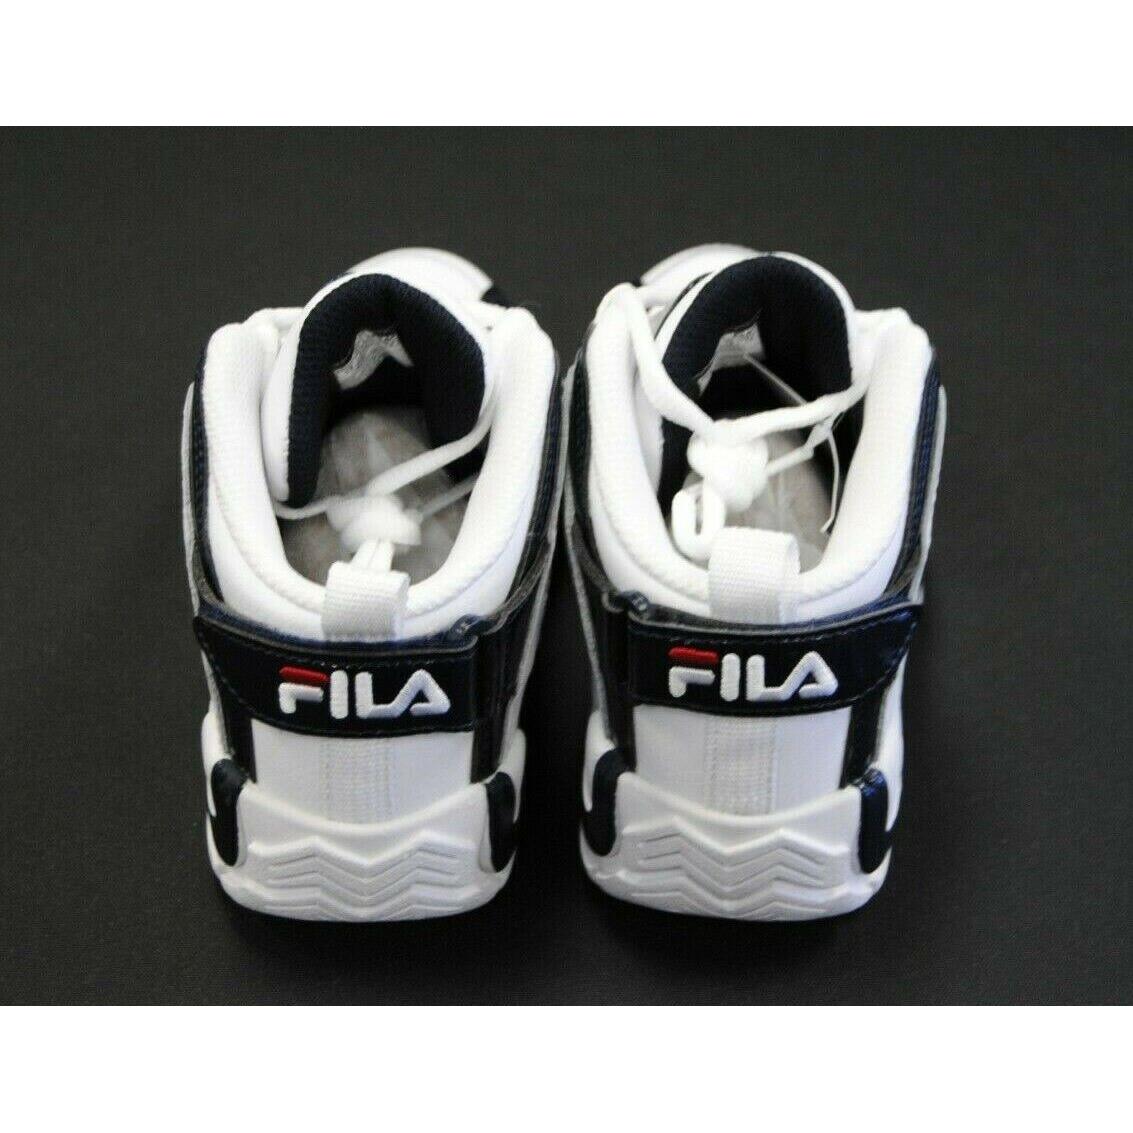 Fila shoes GRANT HILL - Multi-Color 5